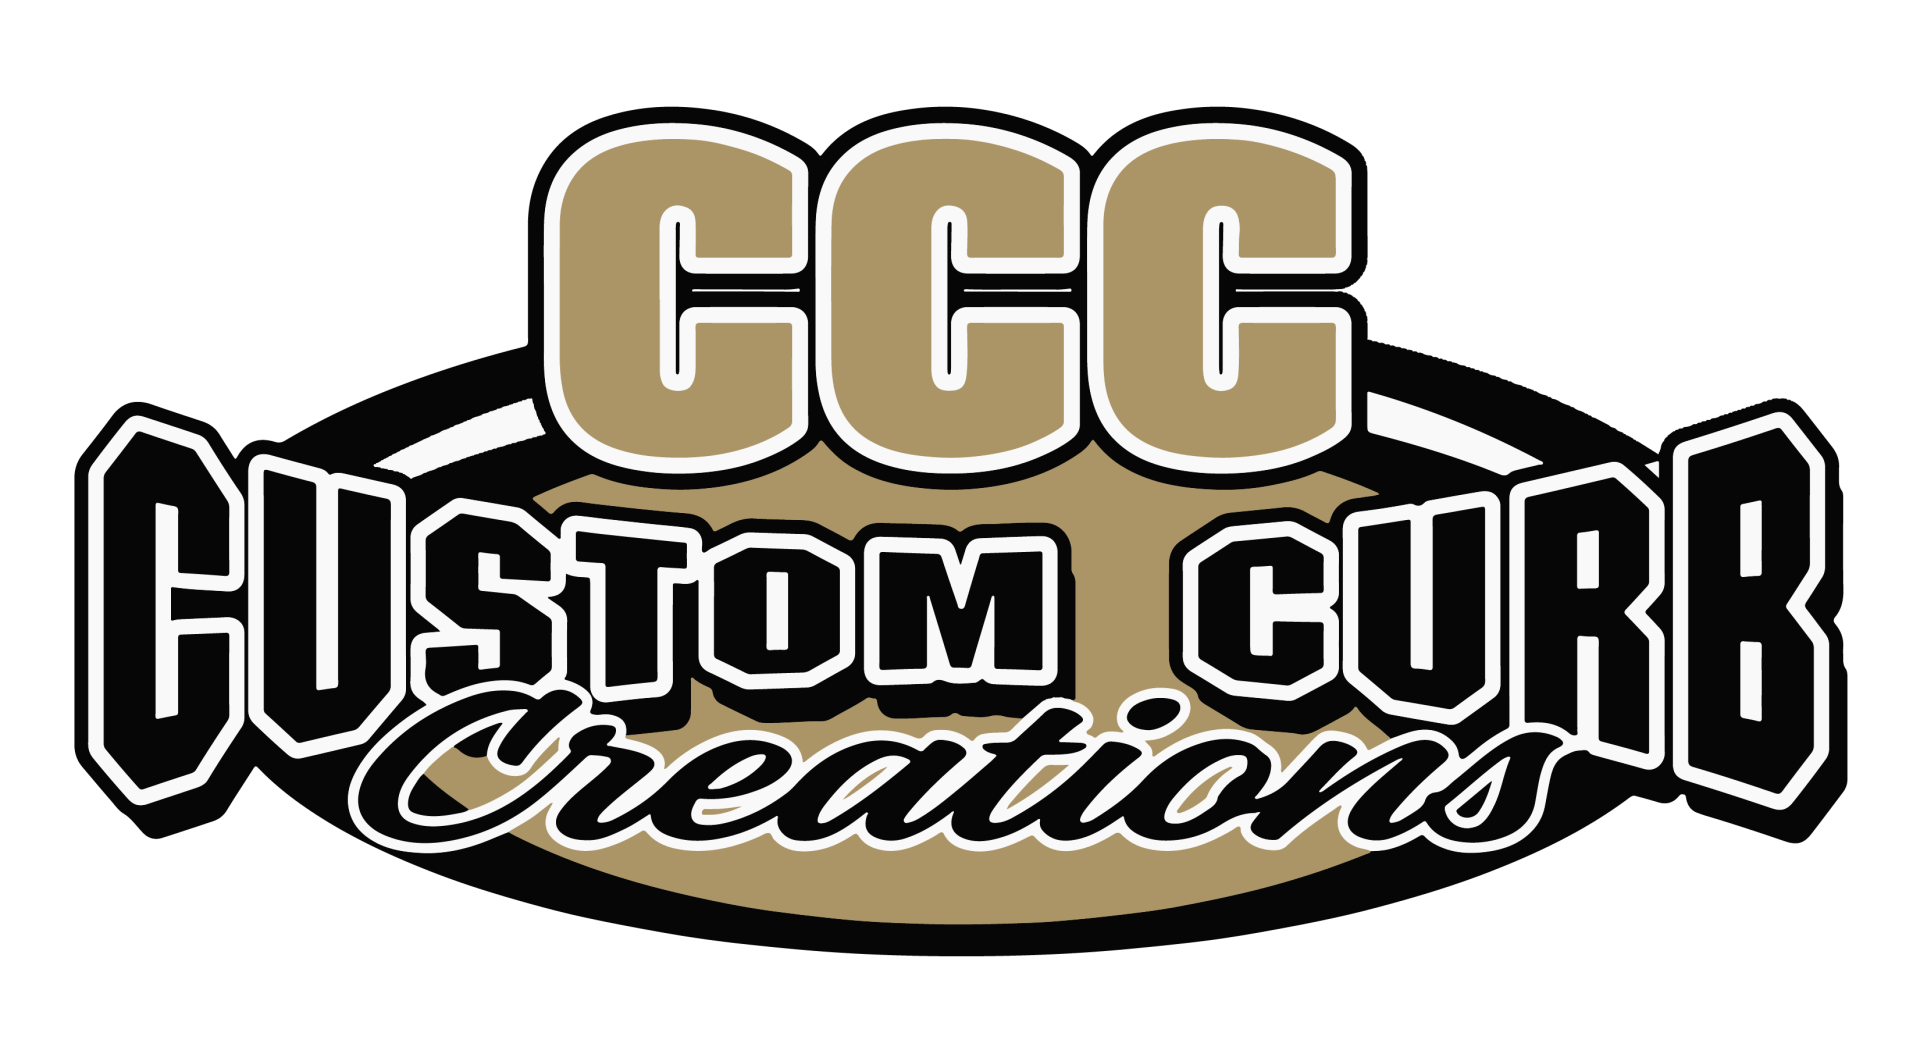 Custom Curb Creations LLC - Logo